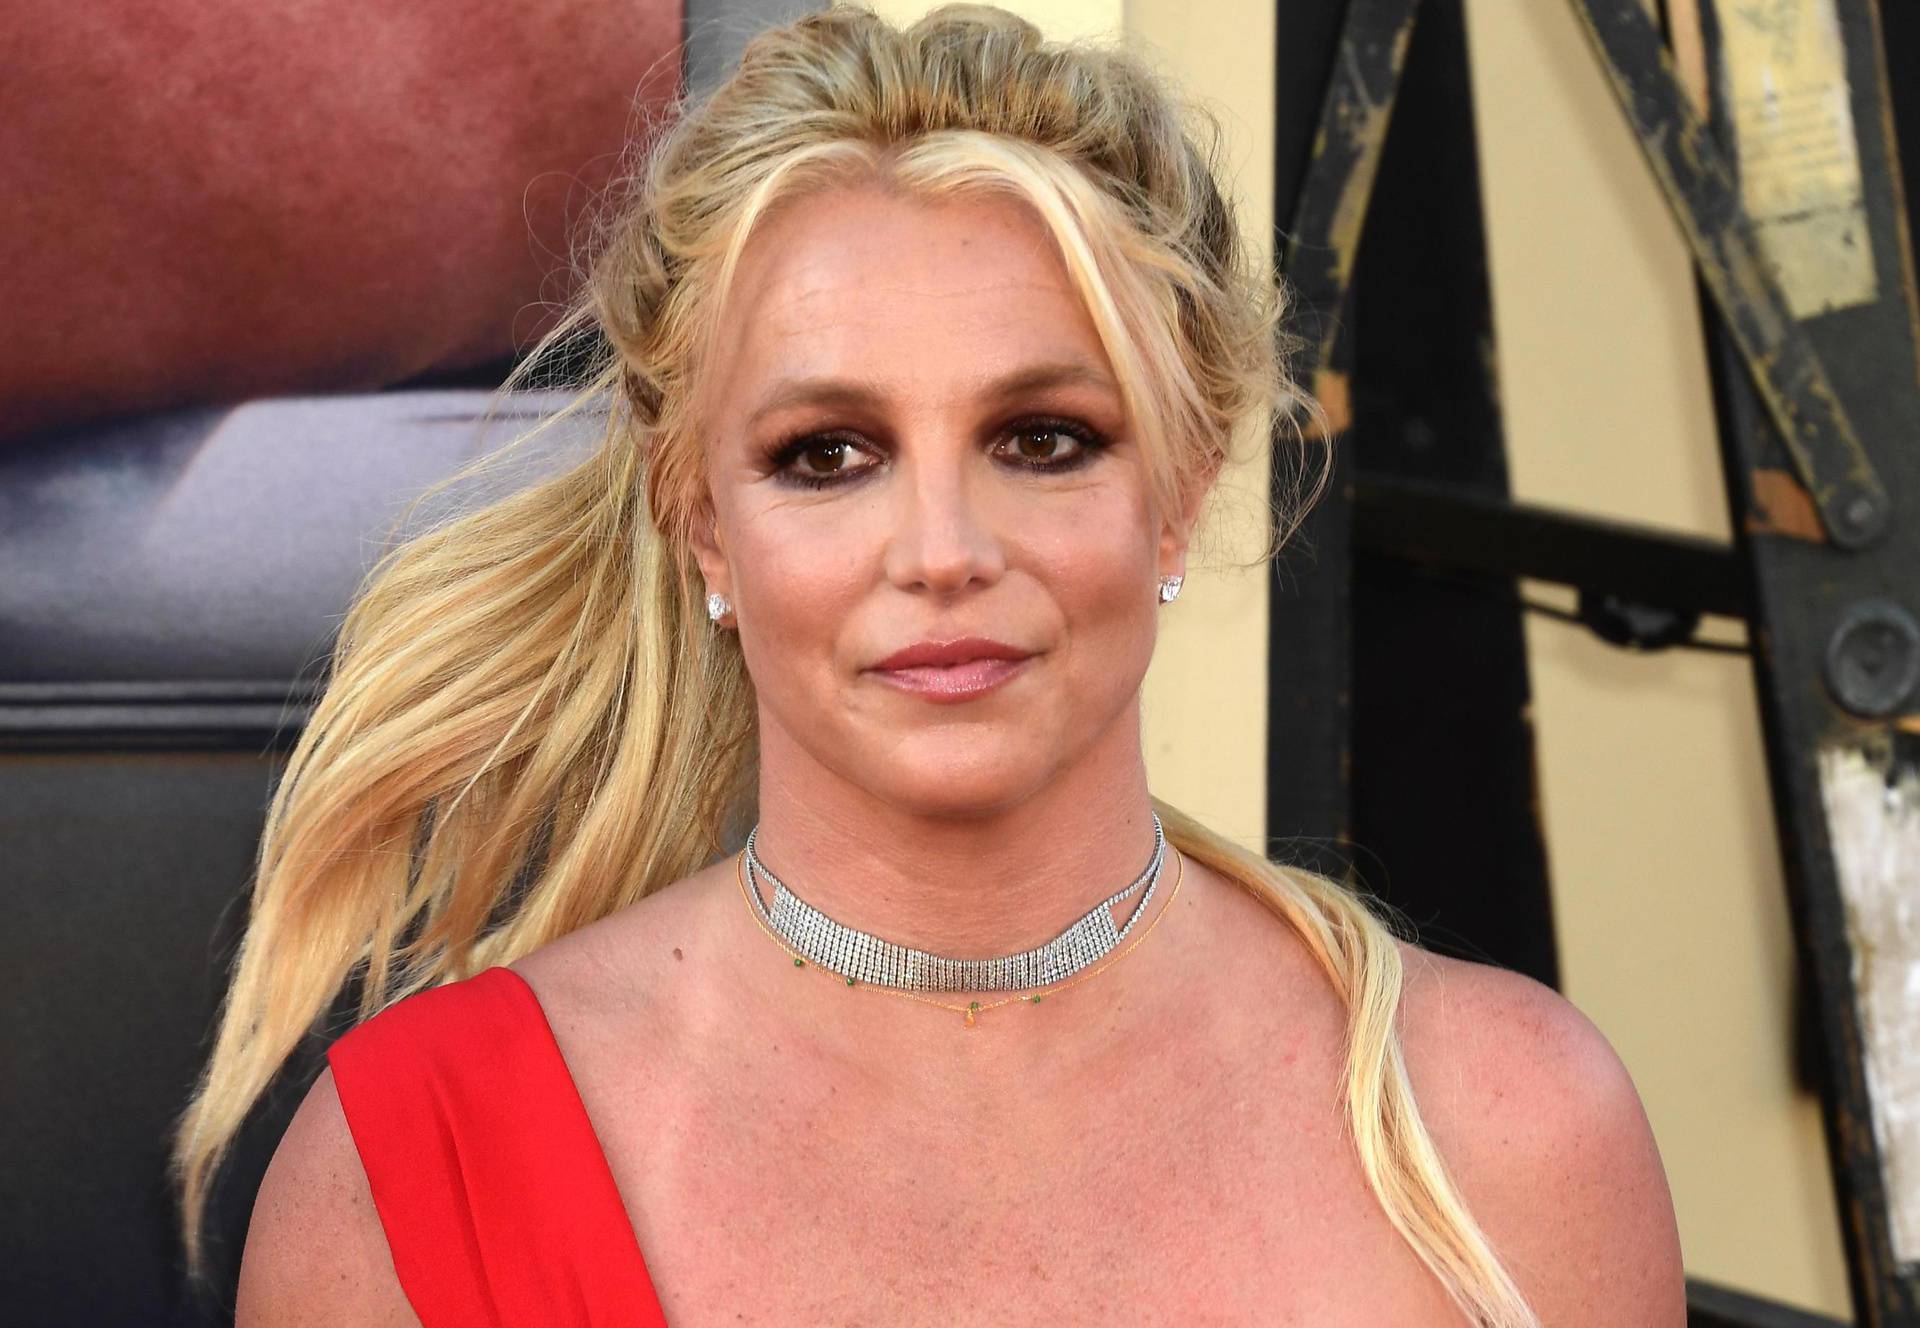 Zaručnik Britney Spears želi držati spol njihovog djeteta u tajnosti: 'Čekat ću do rođenja'